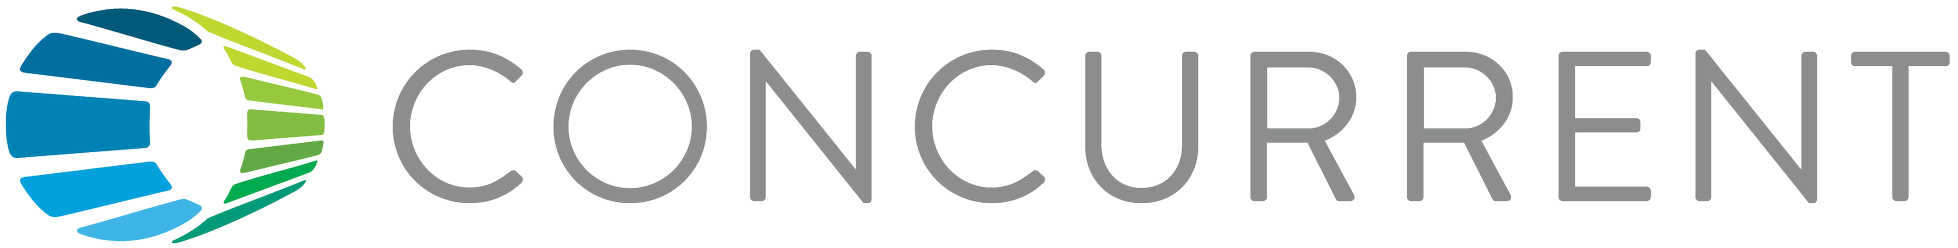 Concurrent logo